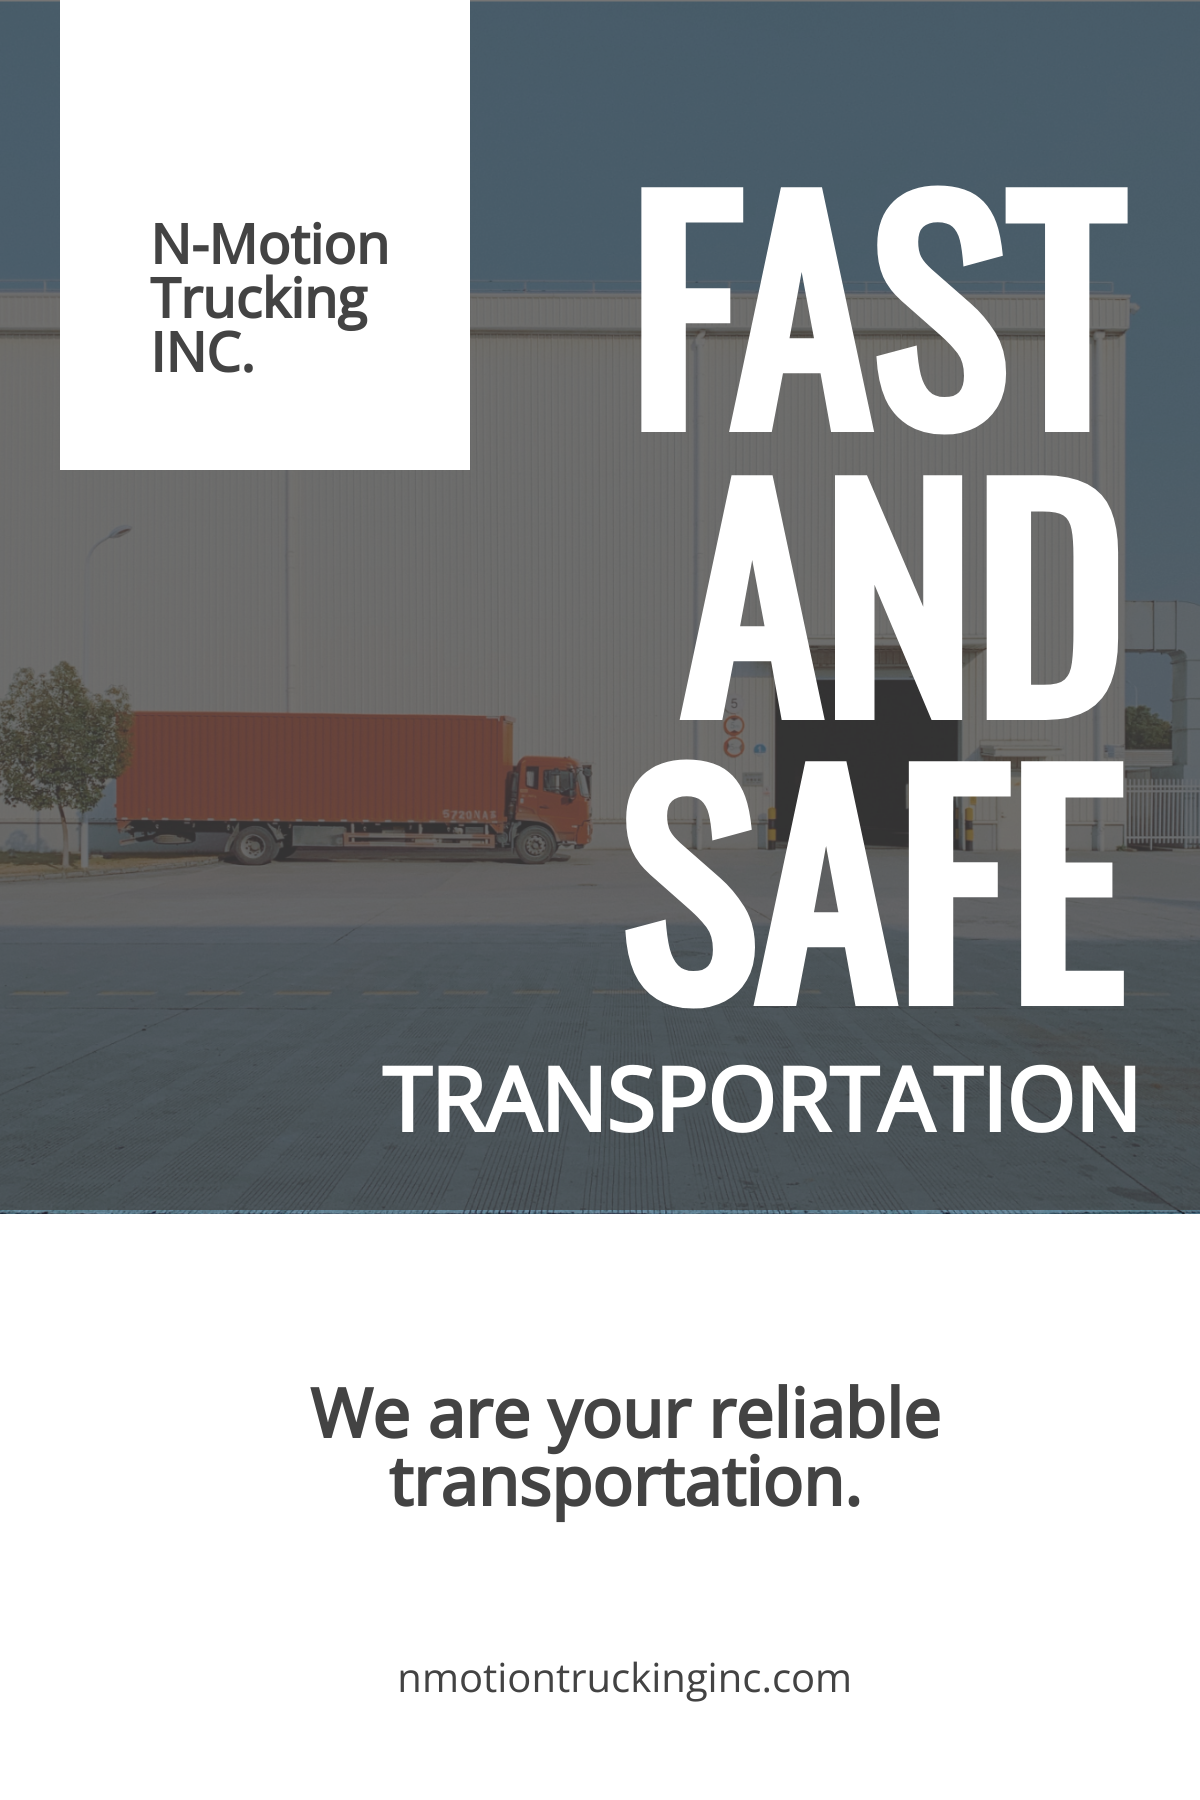 Trucking & Logistics Pinterest Pin Template